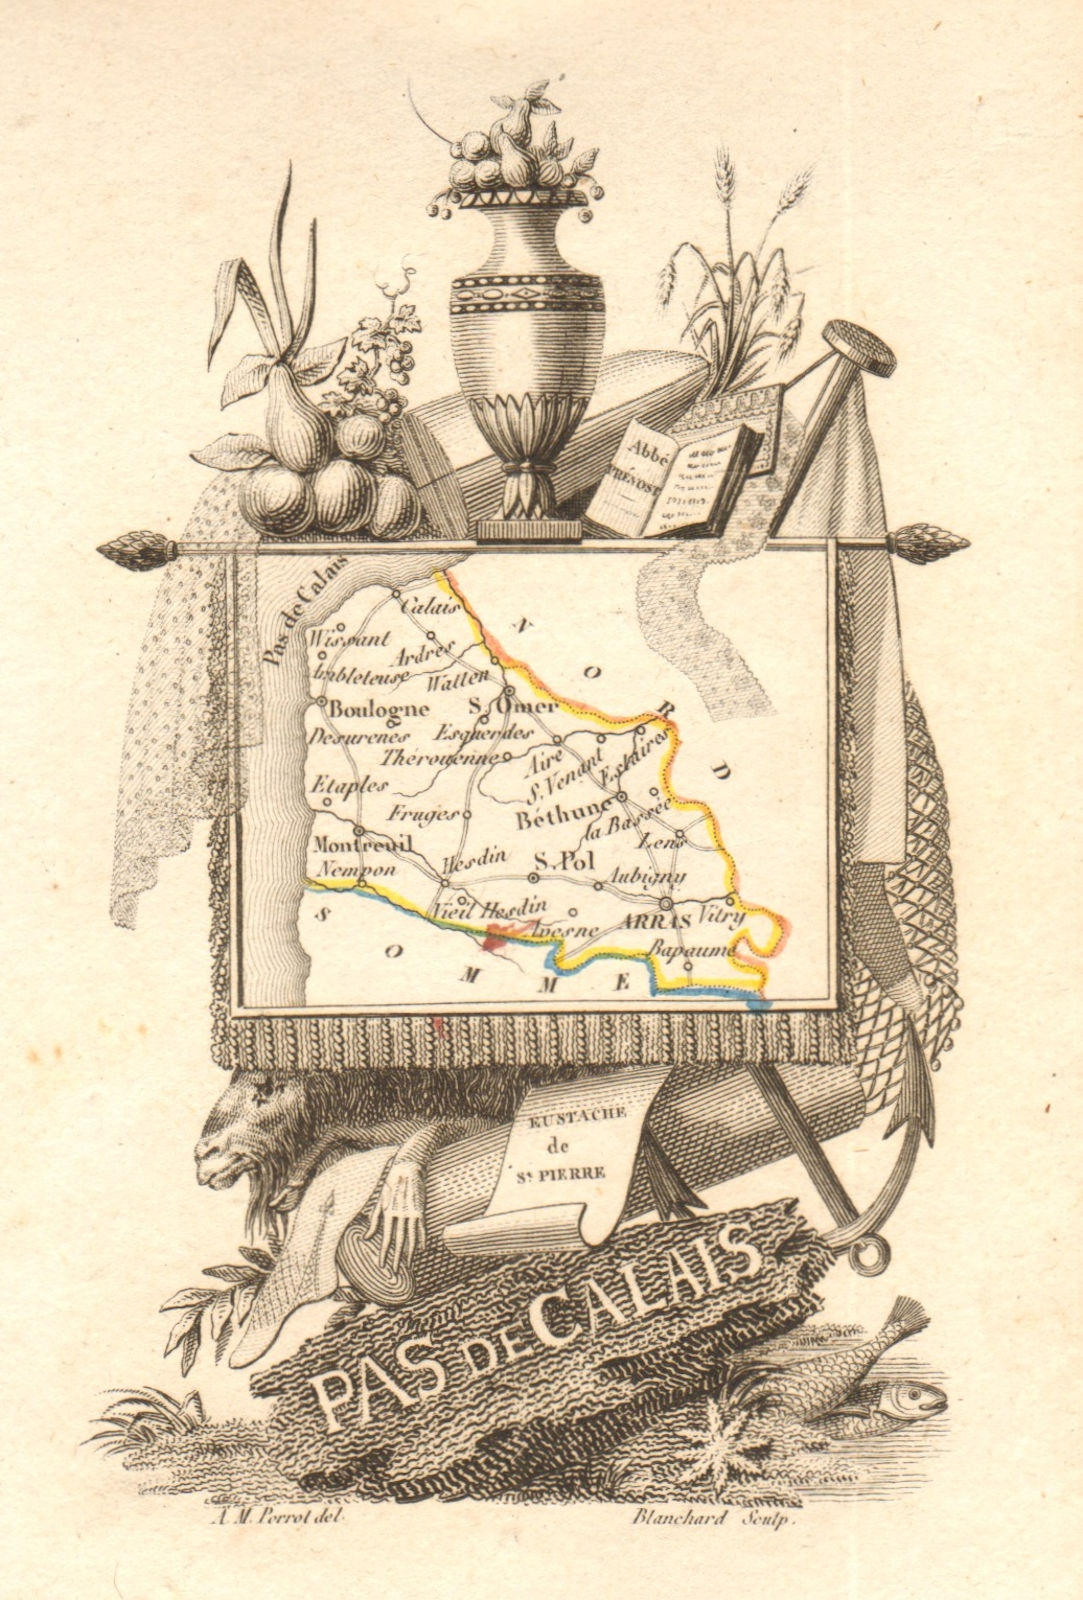 Associate Product PAS-DE-CALAIS département. Scarce antique map/carte by A.M. PERROT 1823